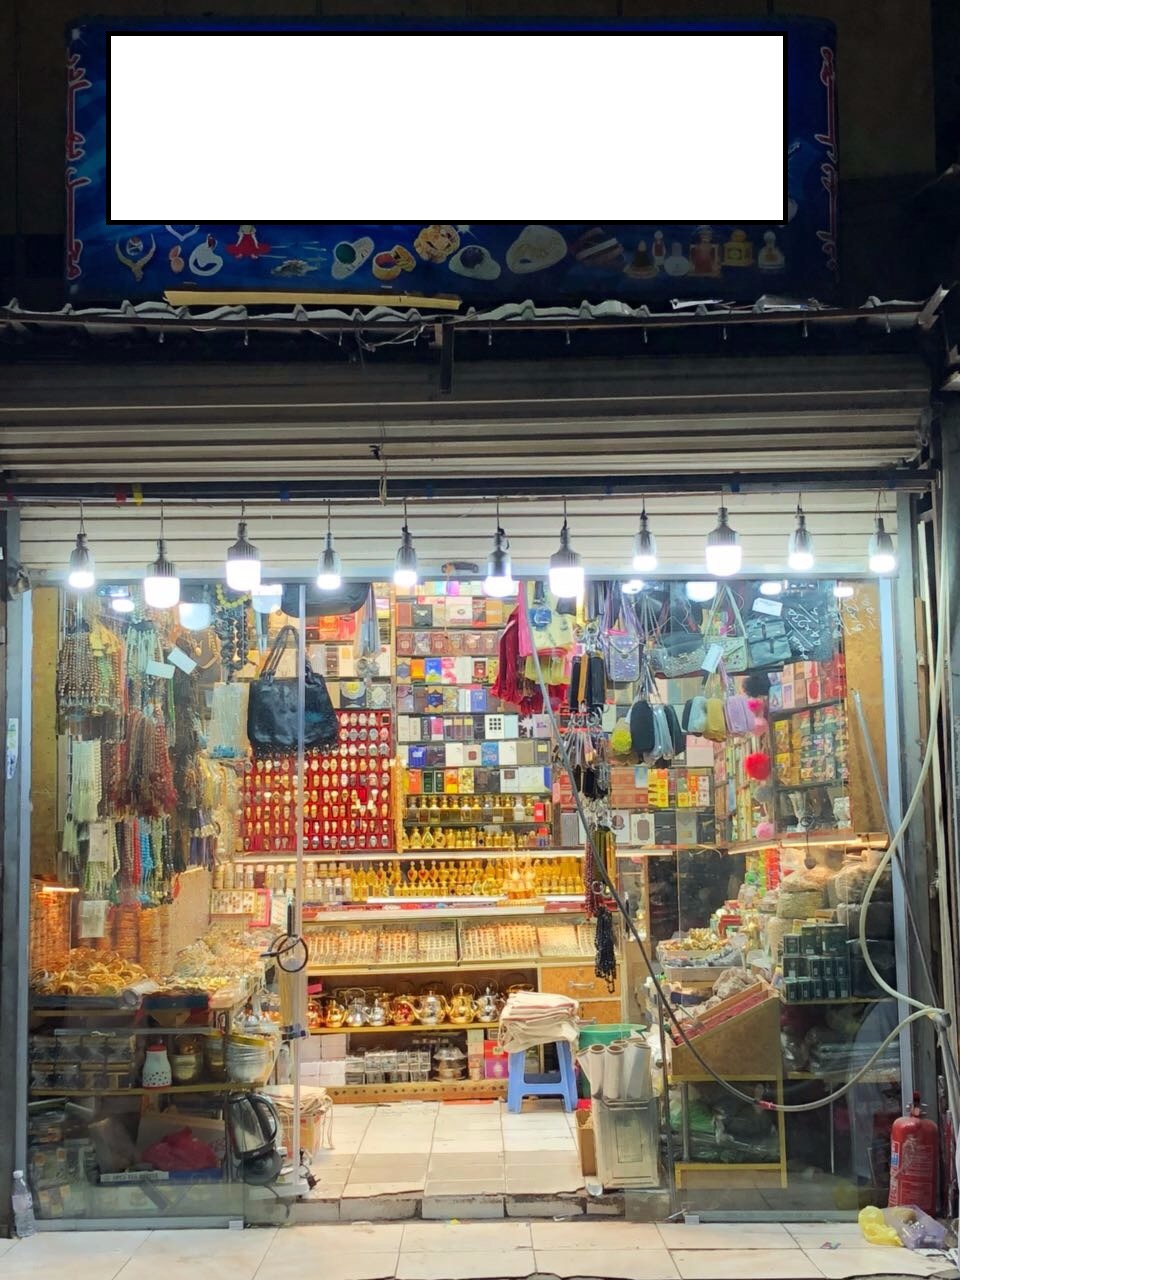 بلدية أجياد تلزم أصحاب المحلات بتركيب واجهات زجاجية لهذا السبب